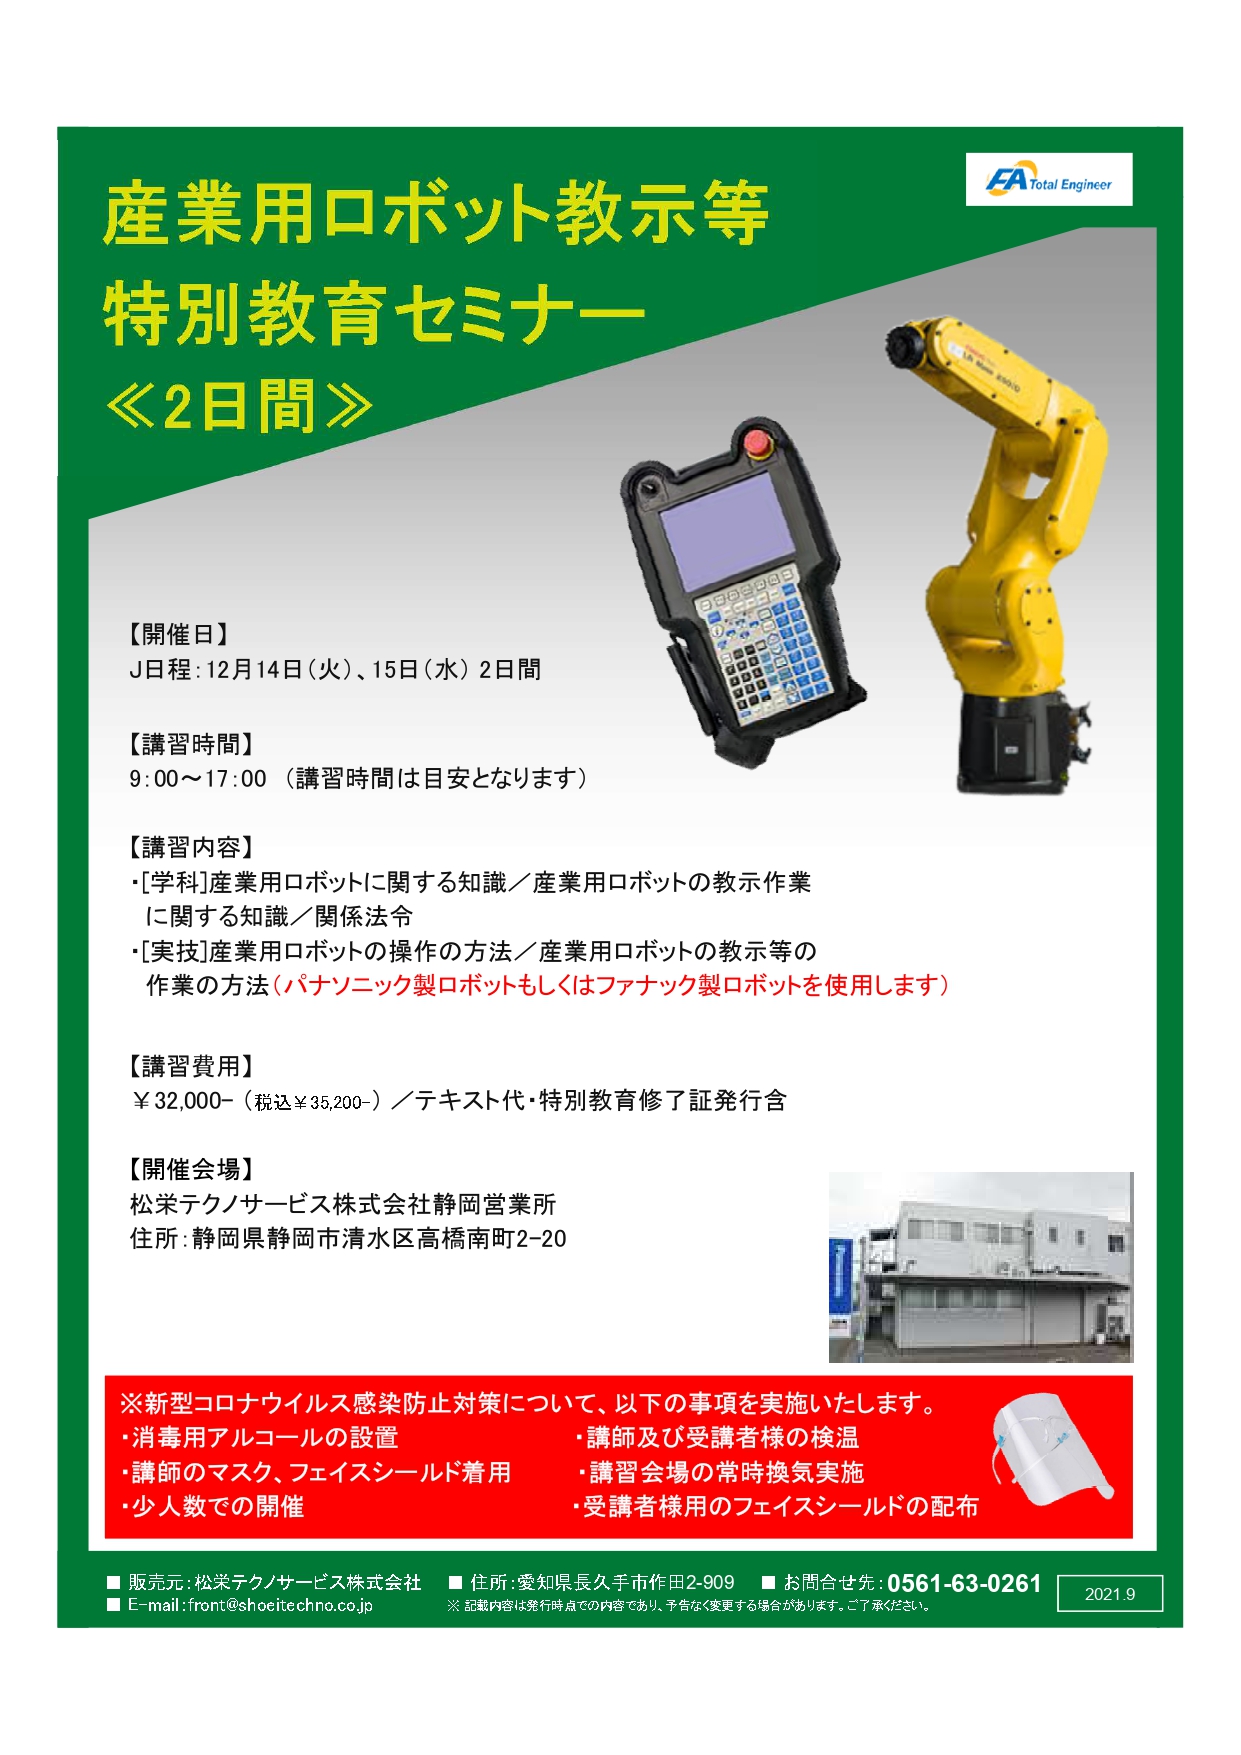 【終了しました】産業用ロボット特別教育（教示等）静岡会場開催のお知らせ【2021年12月】